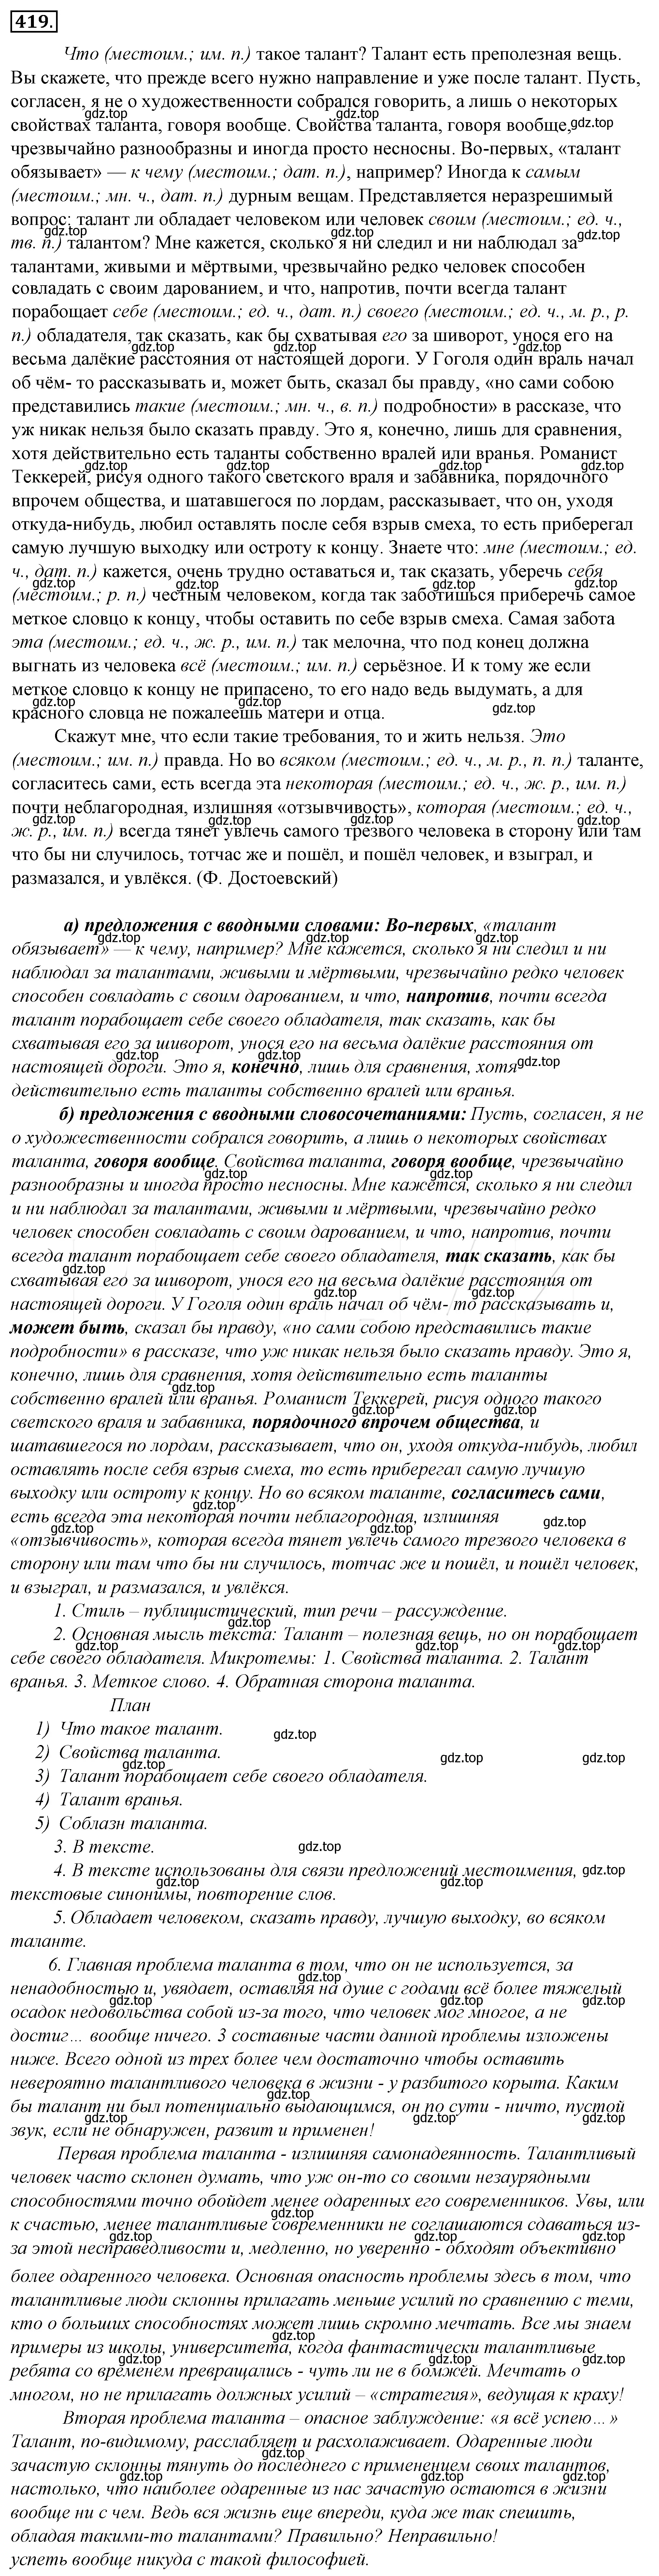 Решение 4. номер 84 (страница 114) гдз по русскому языку 10-11 класс Гольцова, Шамшин, учебник 2 часть